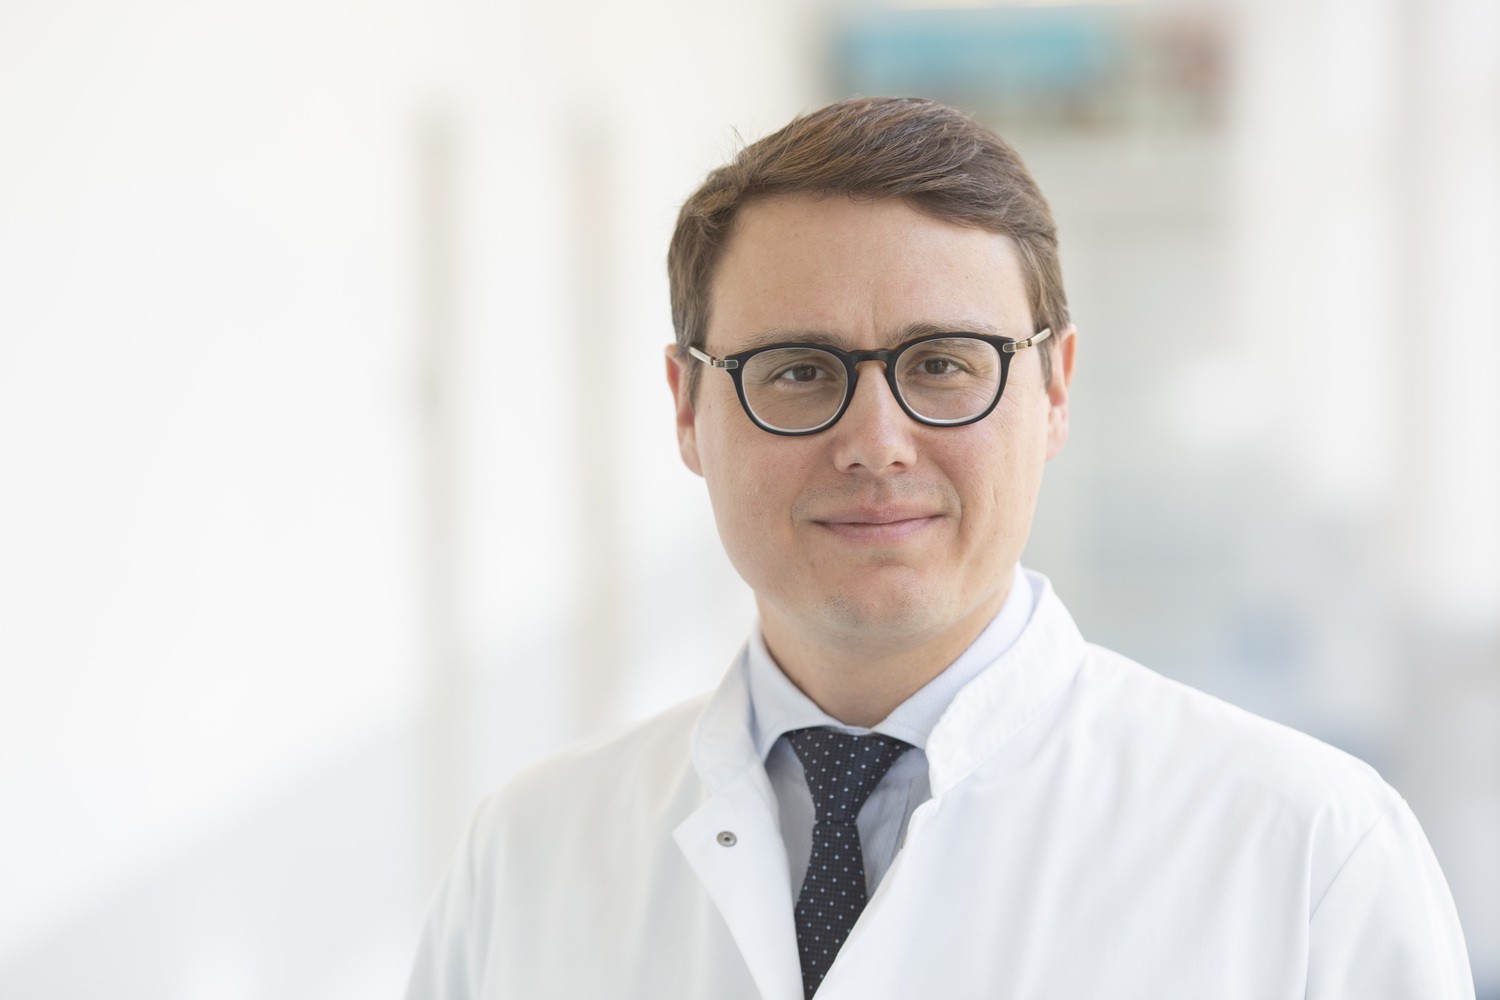 Prof. Dr. Timm Denecke leitet die Klinik und Poliklinik für Diagnostische und Interventionelle Radiologie am Universitätsklinikum Leipzig.